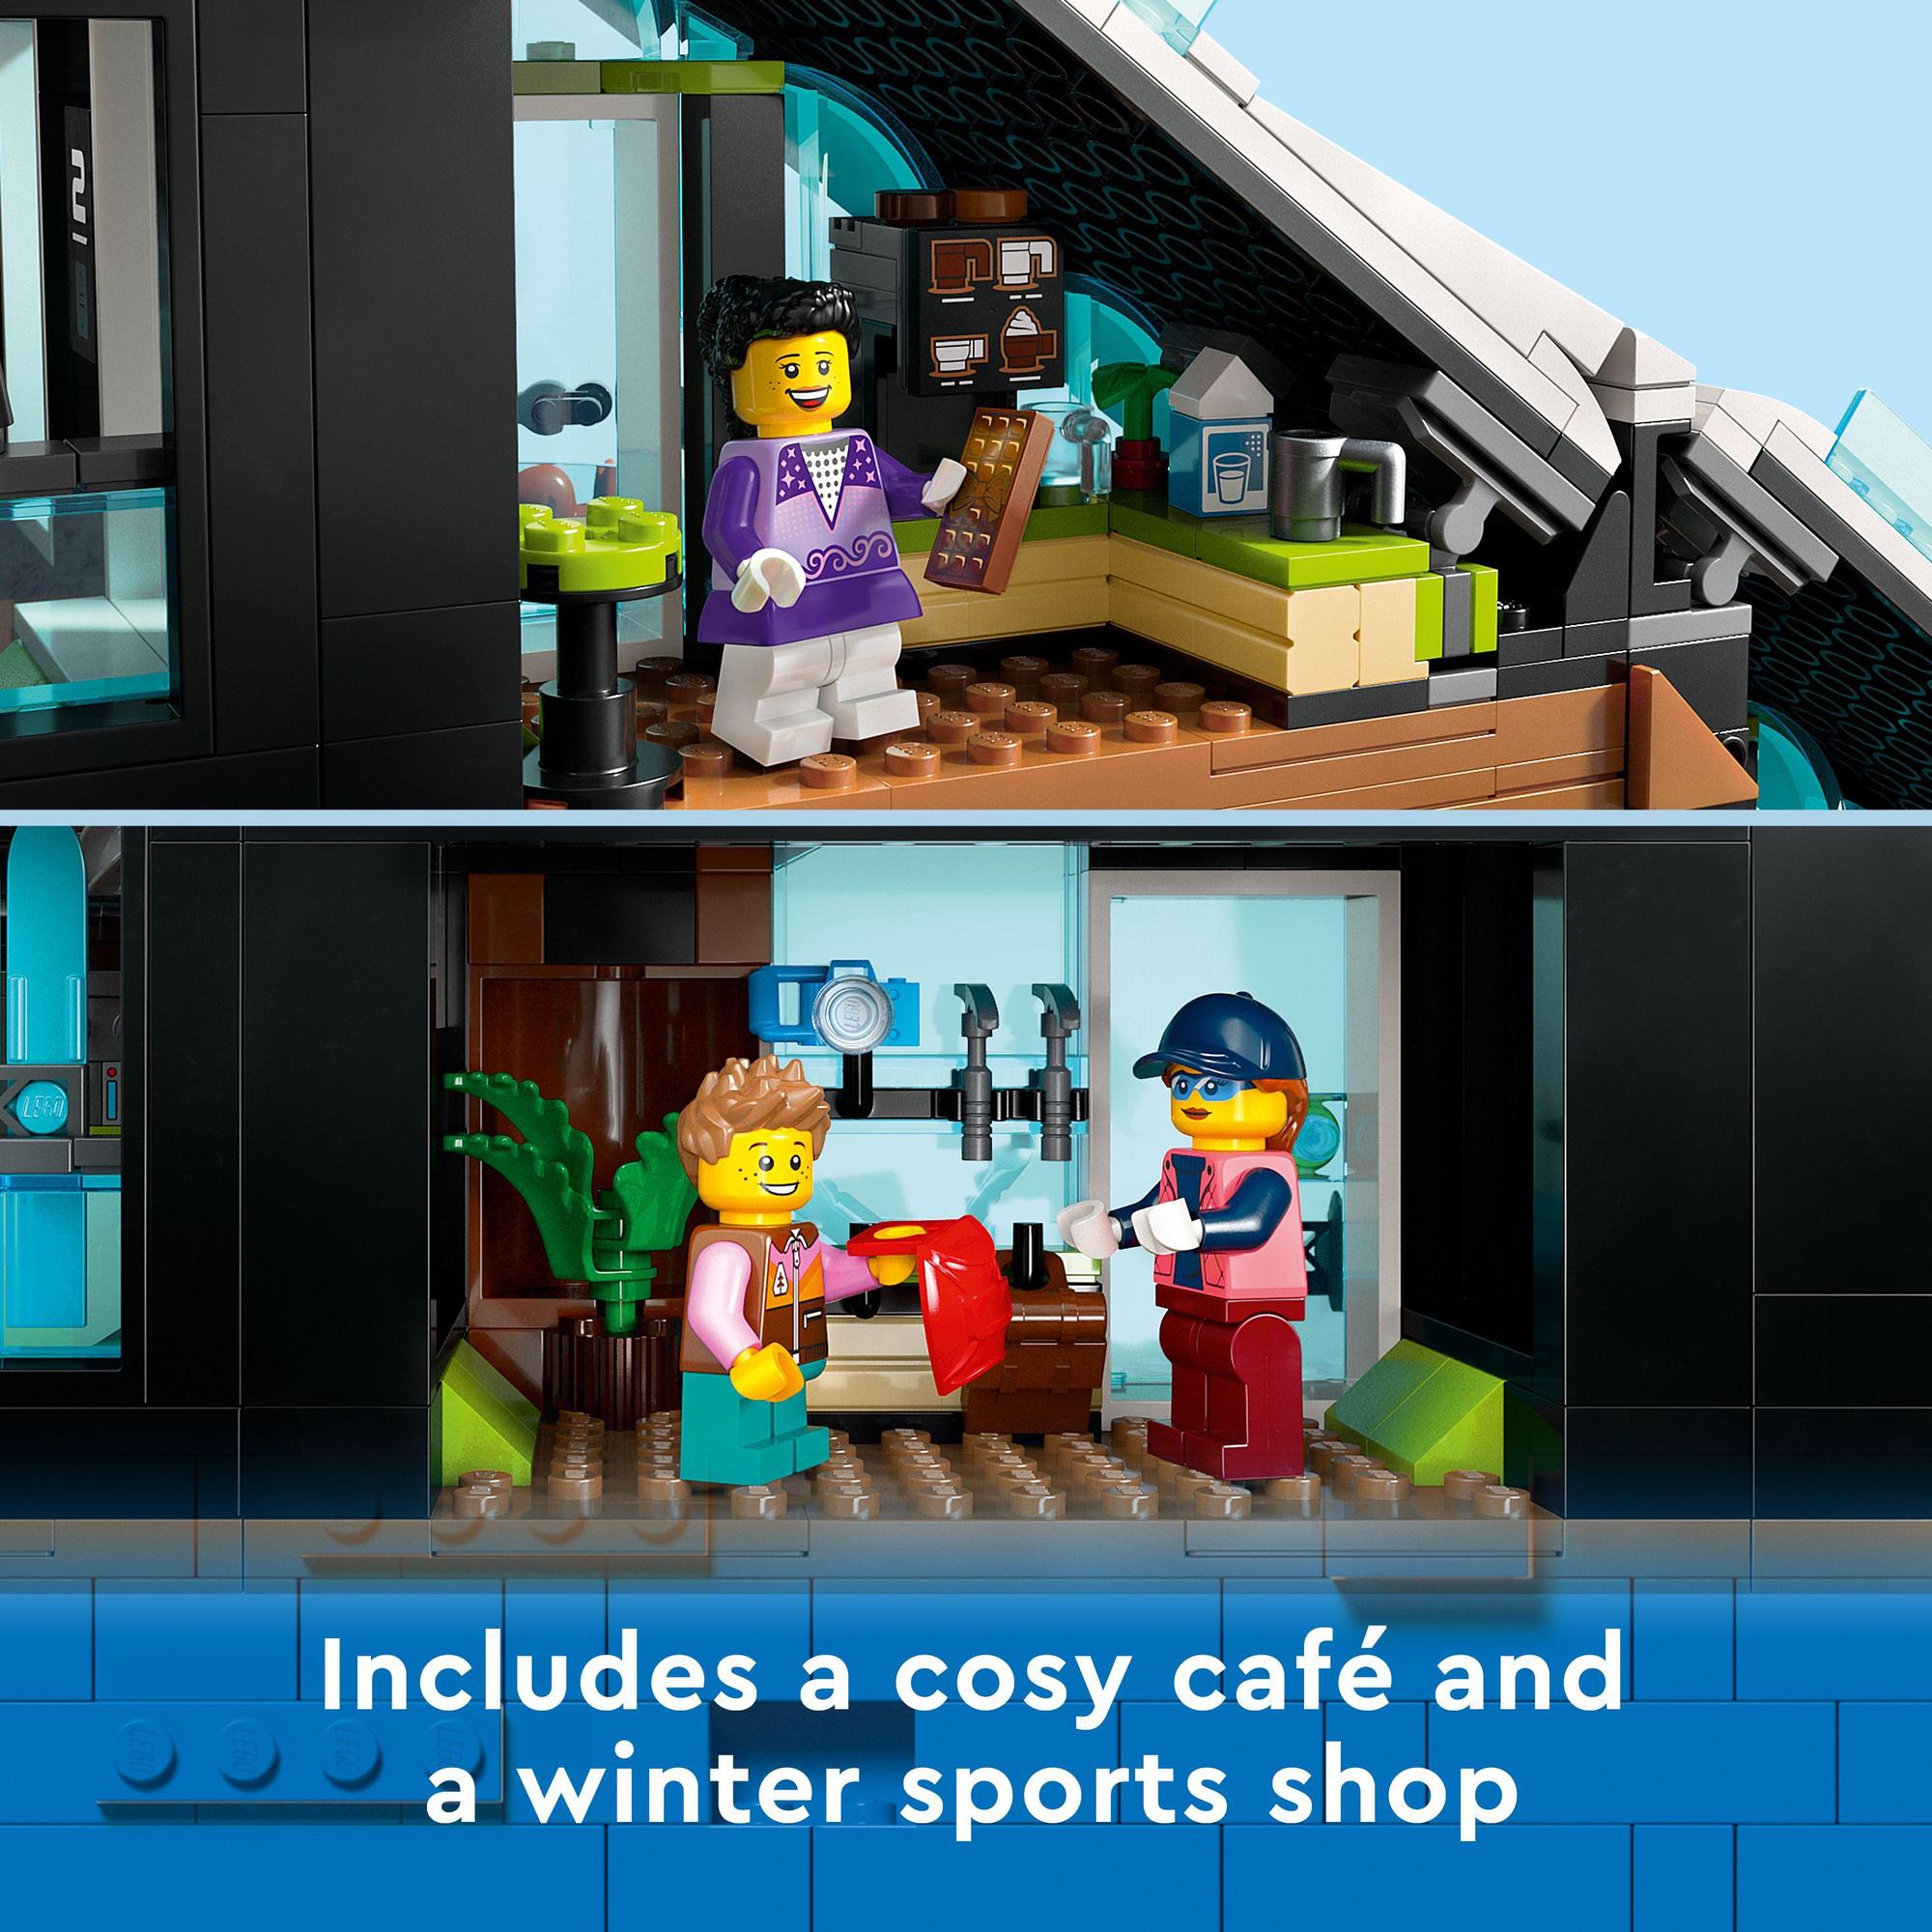 LEGO City 60366 Đồ chơi lắp ráp Khu trung tâm trượt tuyết và leo núi (1,054 chi tiết)